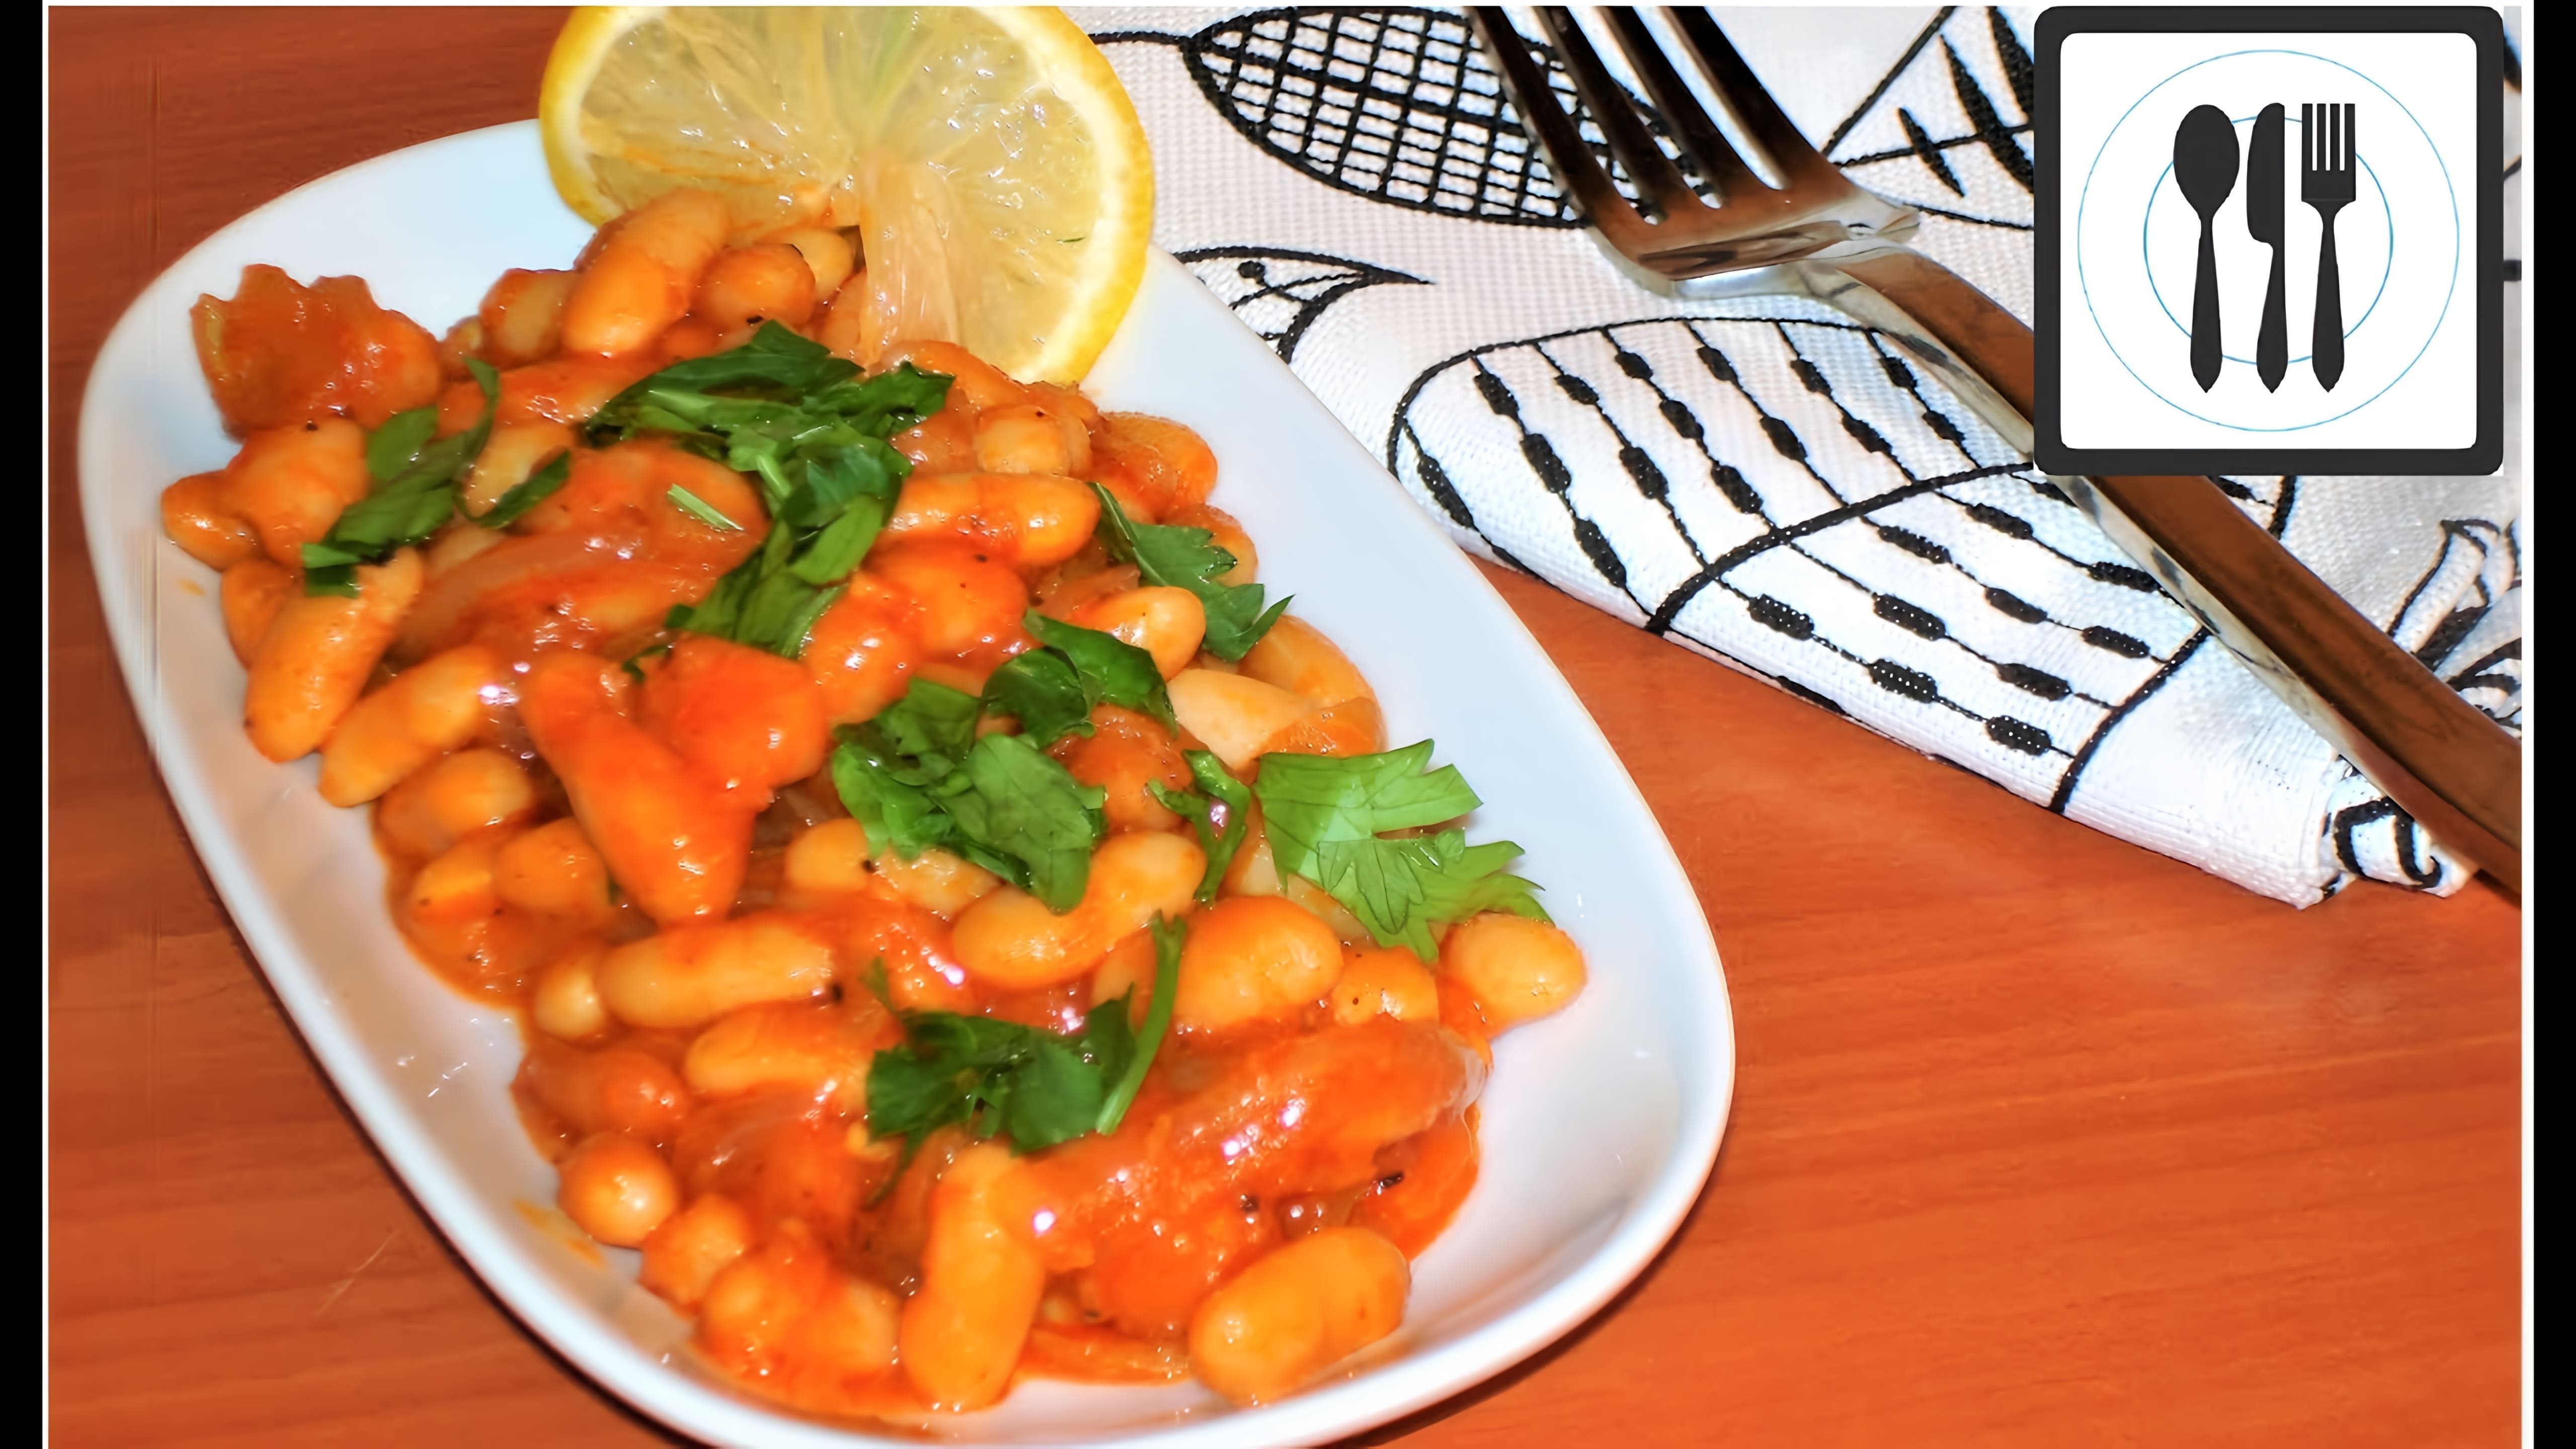 В этом видео демонстрируется рецепт приготовления турецкого блюда "Лобио" или "Фасоль в томатном соусе"